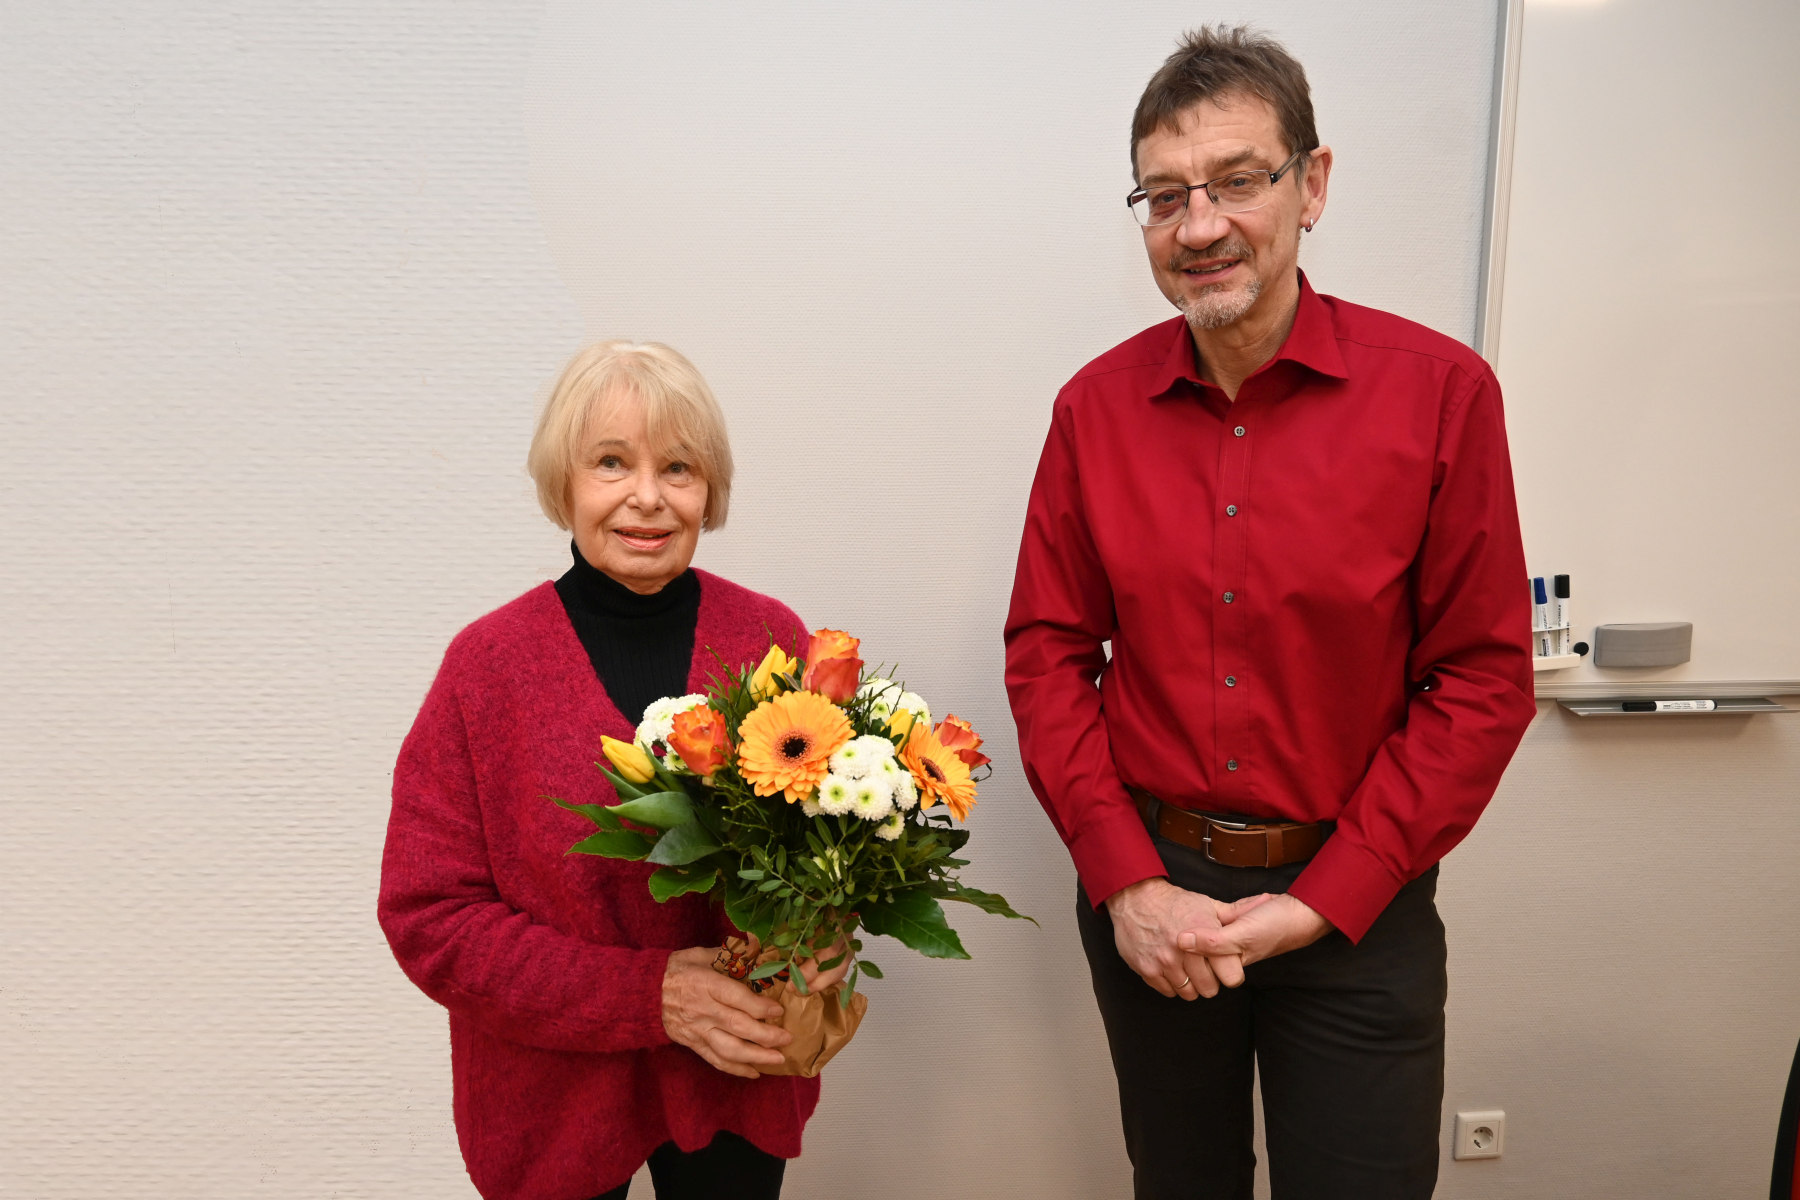 Gisela Schubert unterrichtet seit 50 Jahren Englisch an der Volkshochschule. VHS-Leiter Reiner Volkert gratuliert mit einem Blumenstrauß. Foto © Thomas Graml, Stadt Amberg